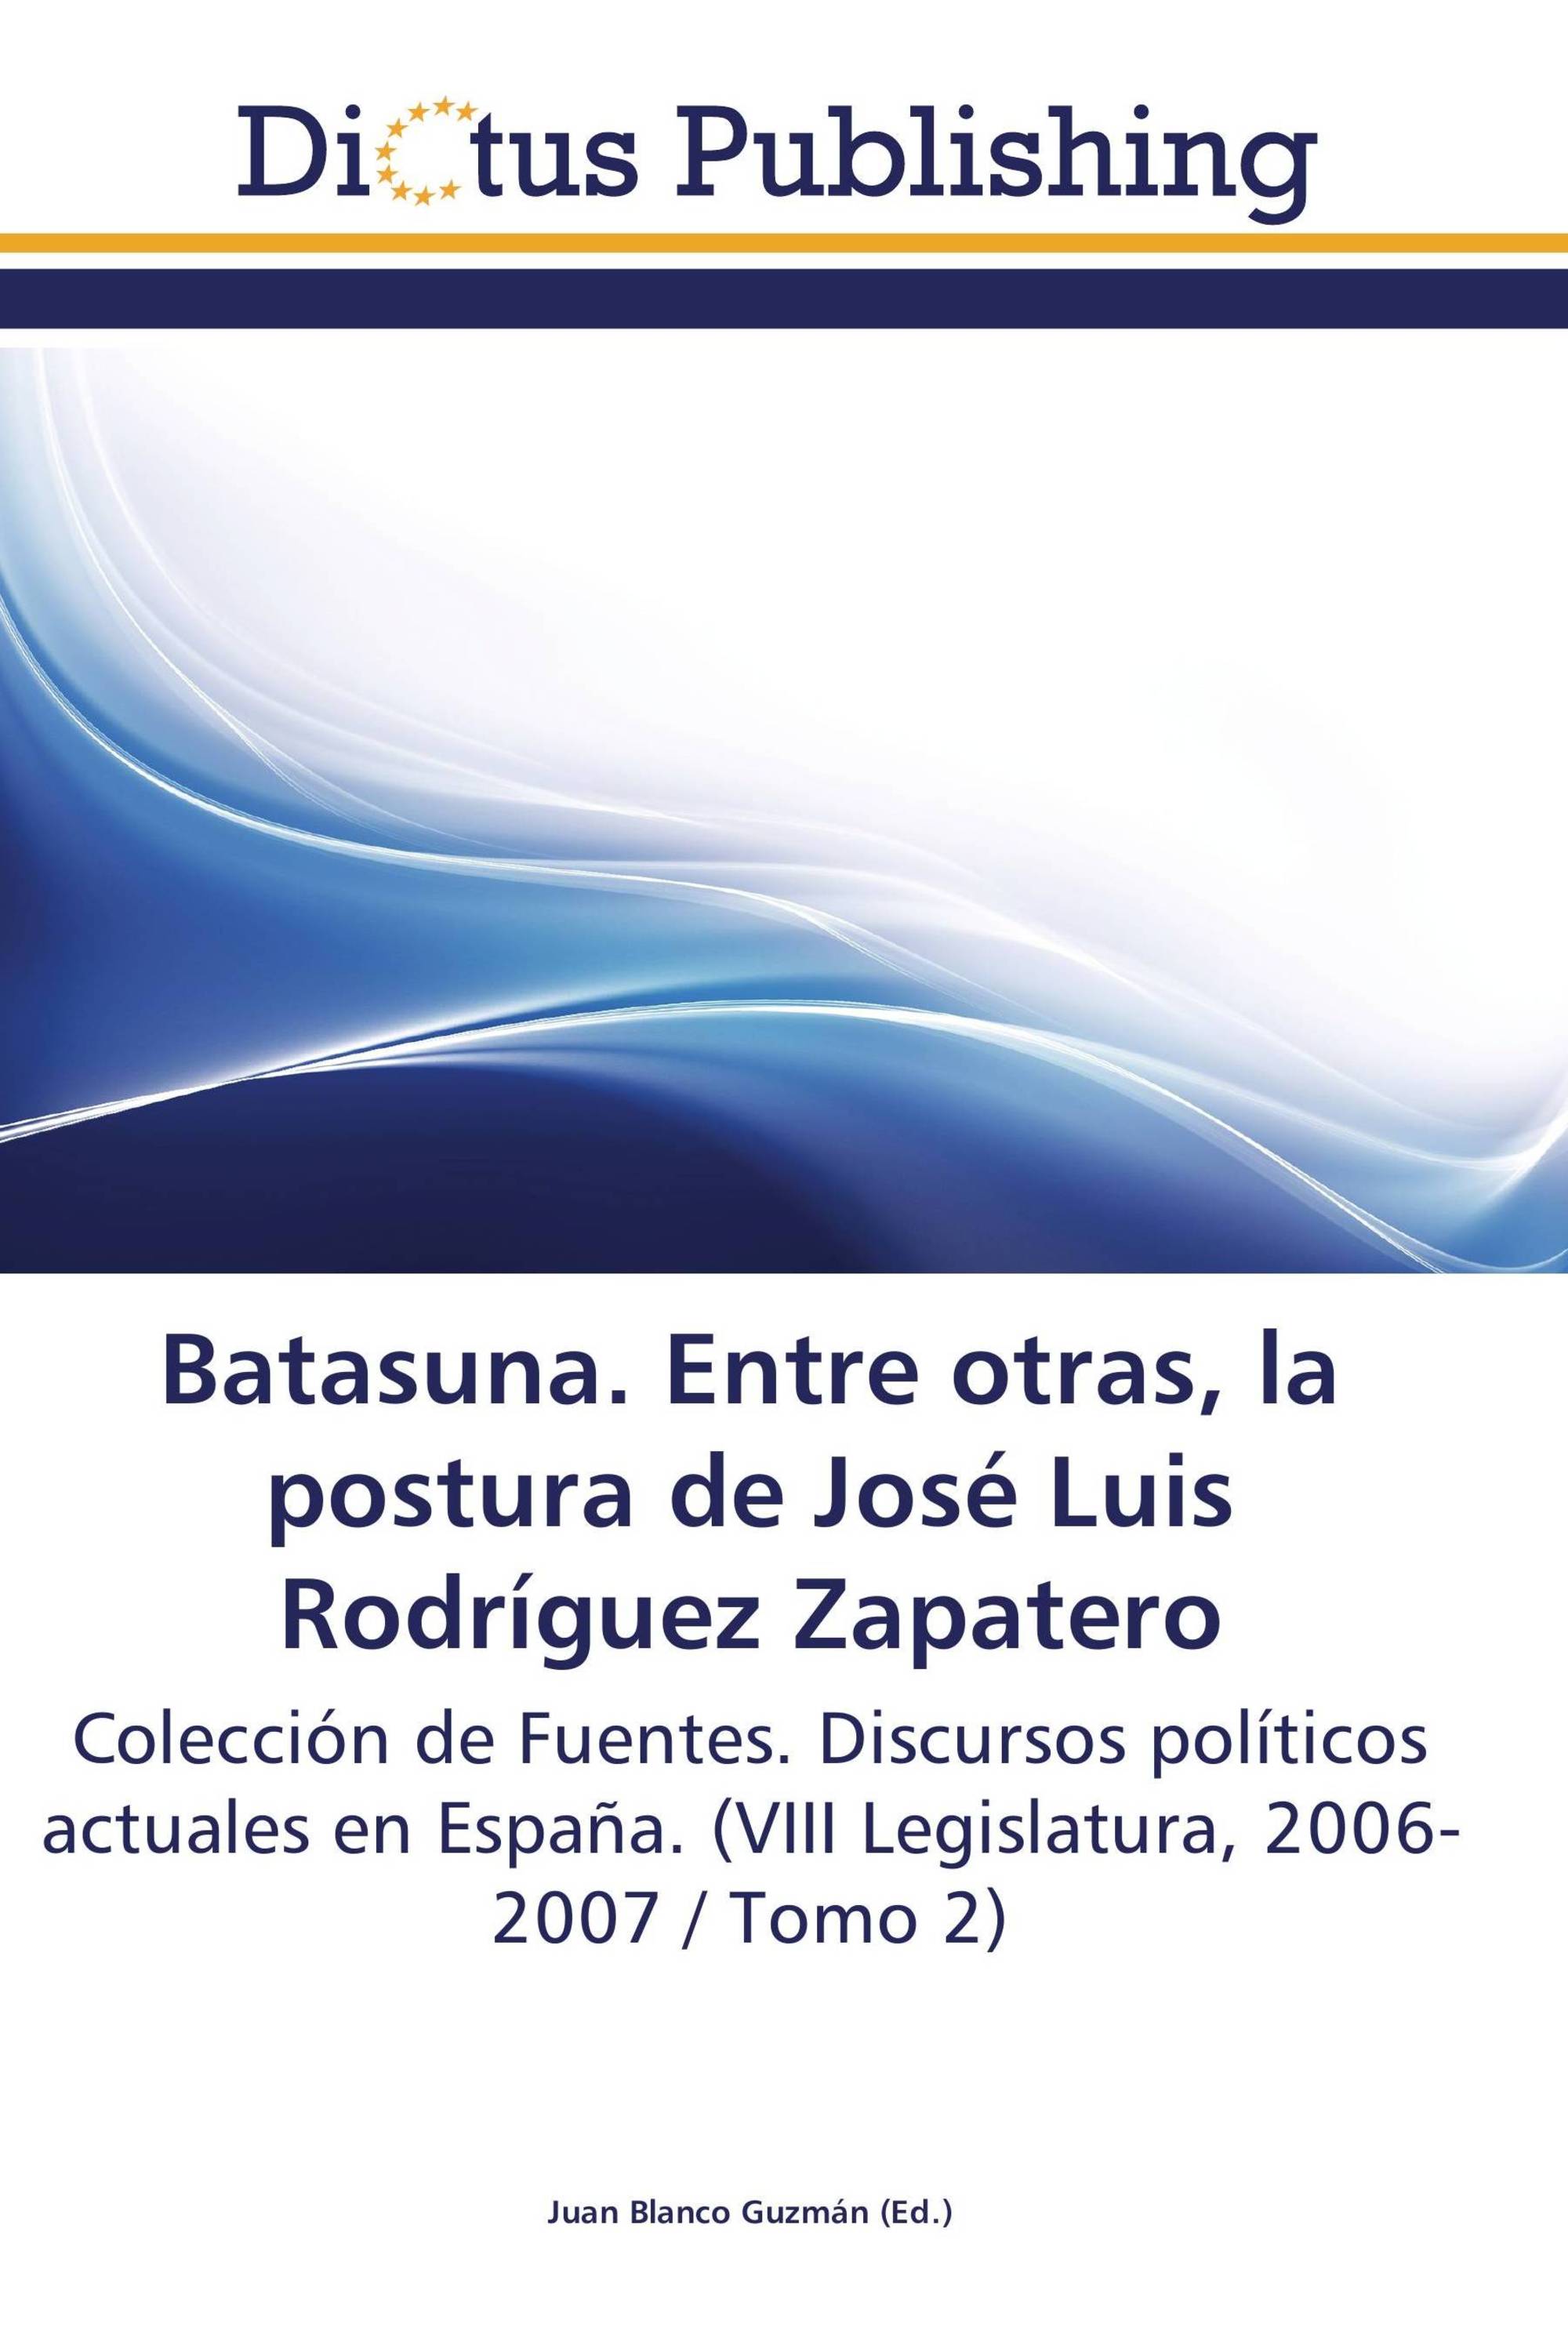 Batasuna. Entre otras, la postura de José Luis Rodríguez Zapatero